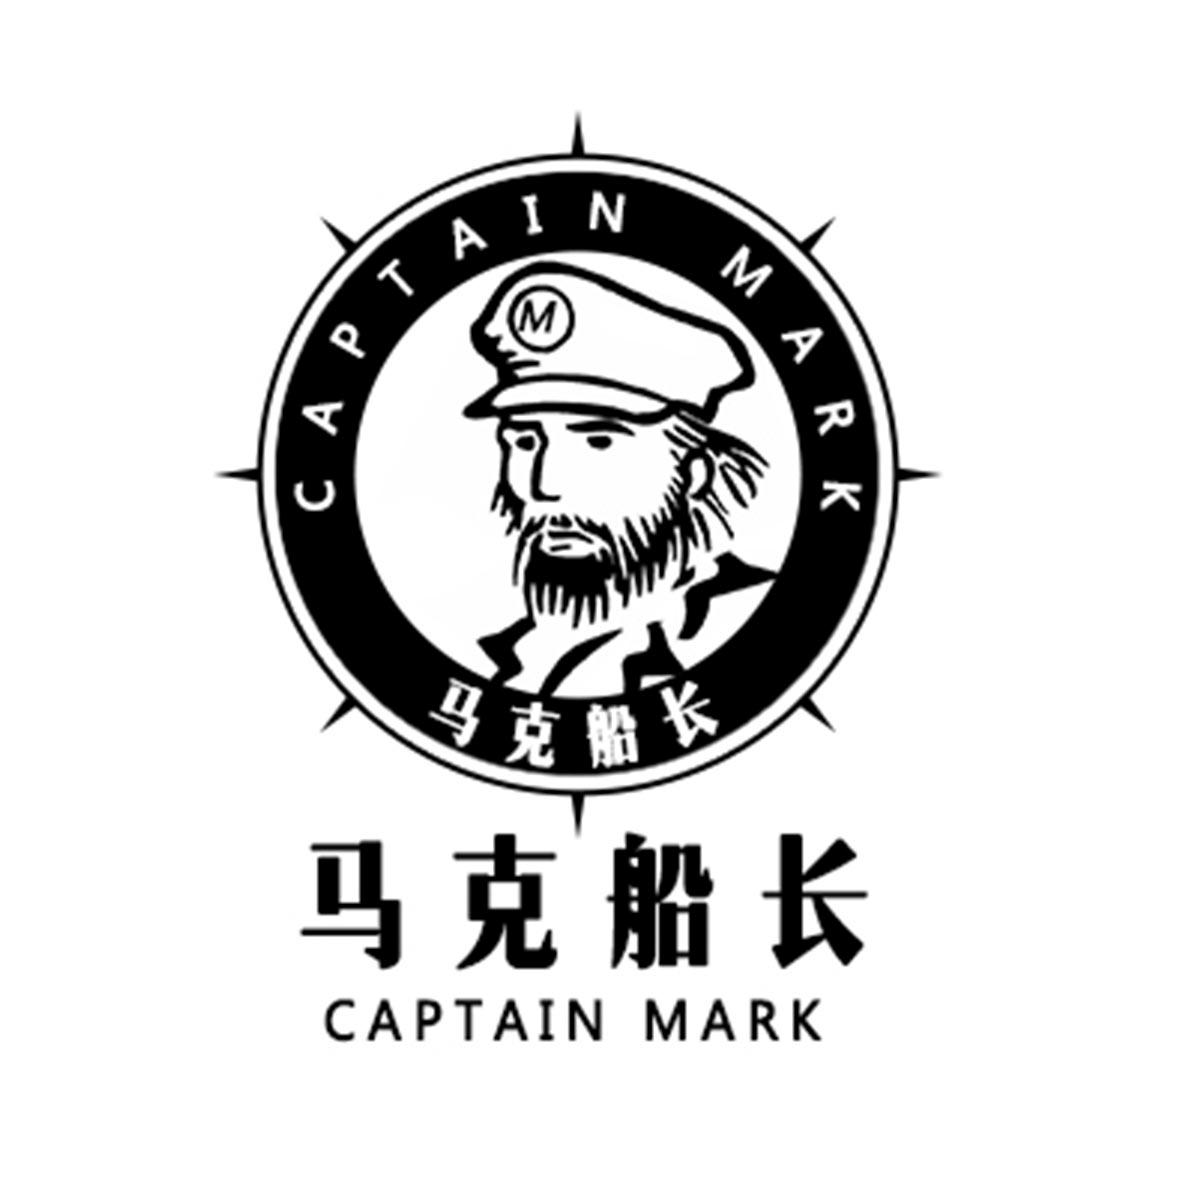 马克船长 captain mark